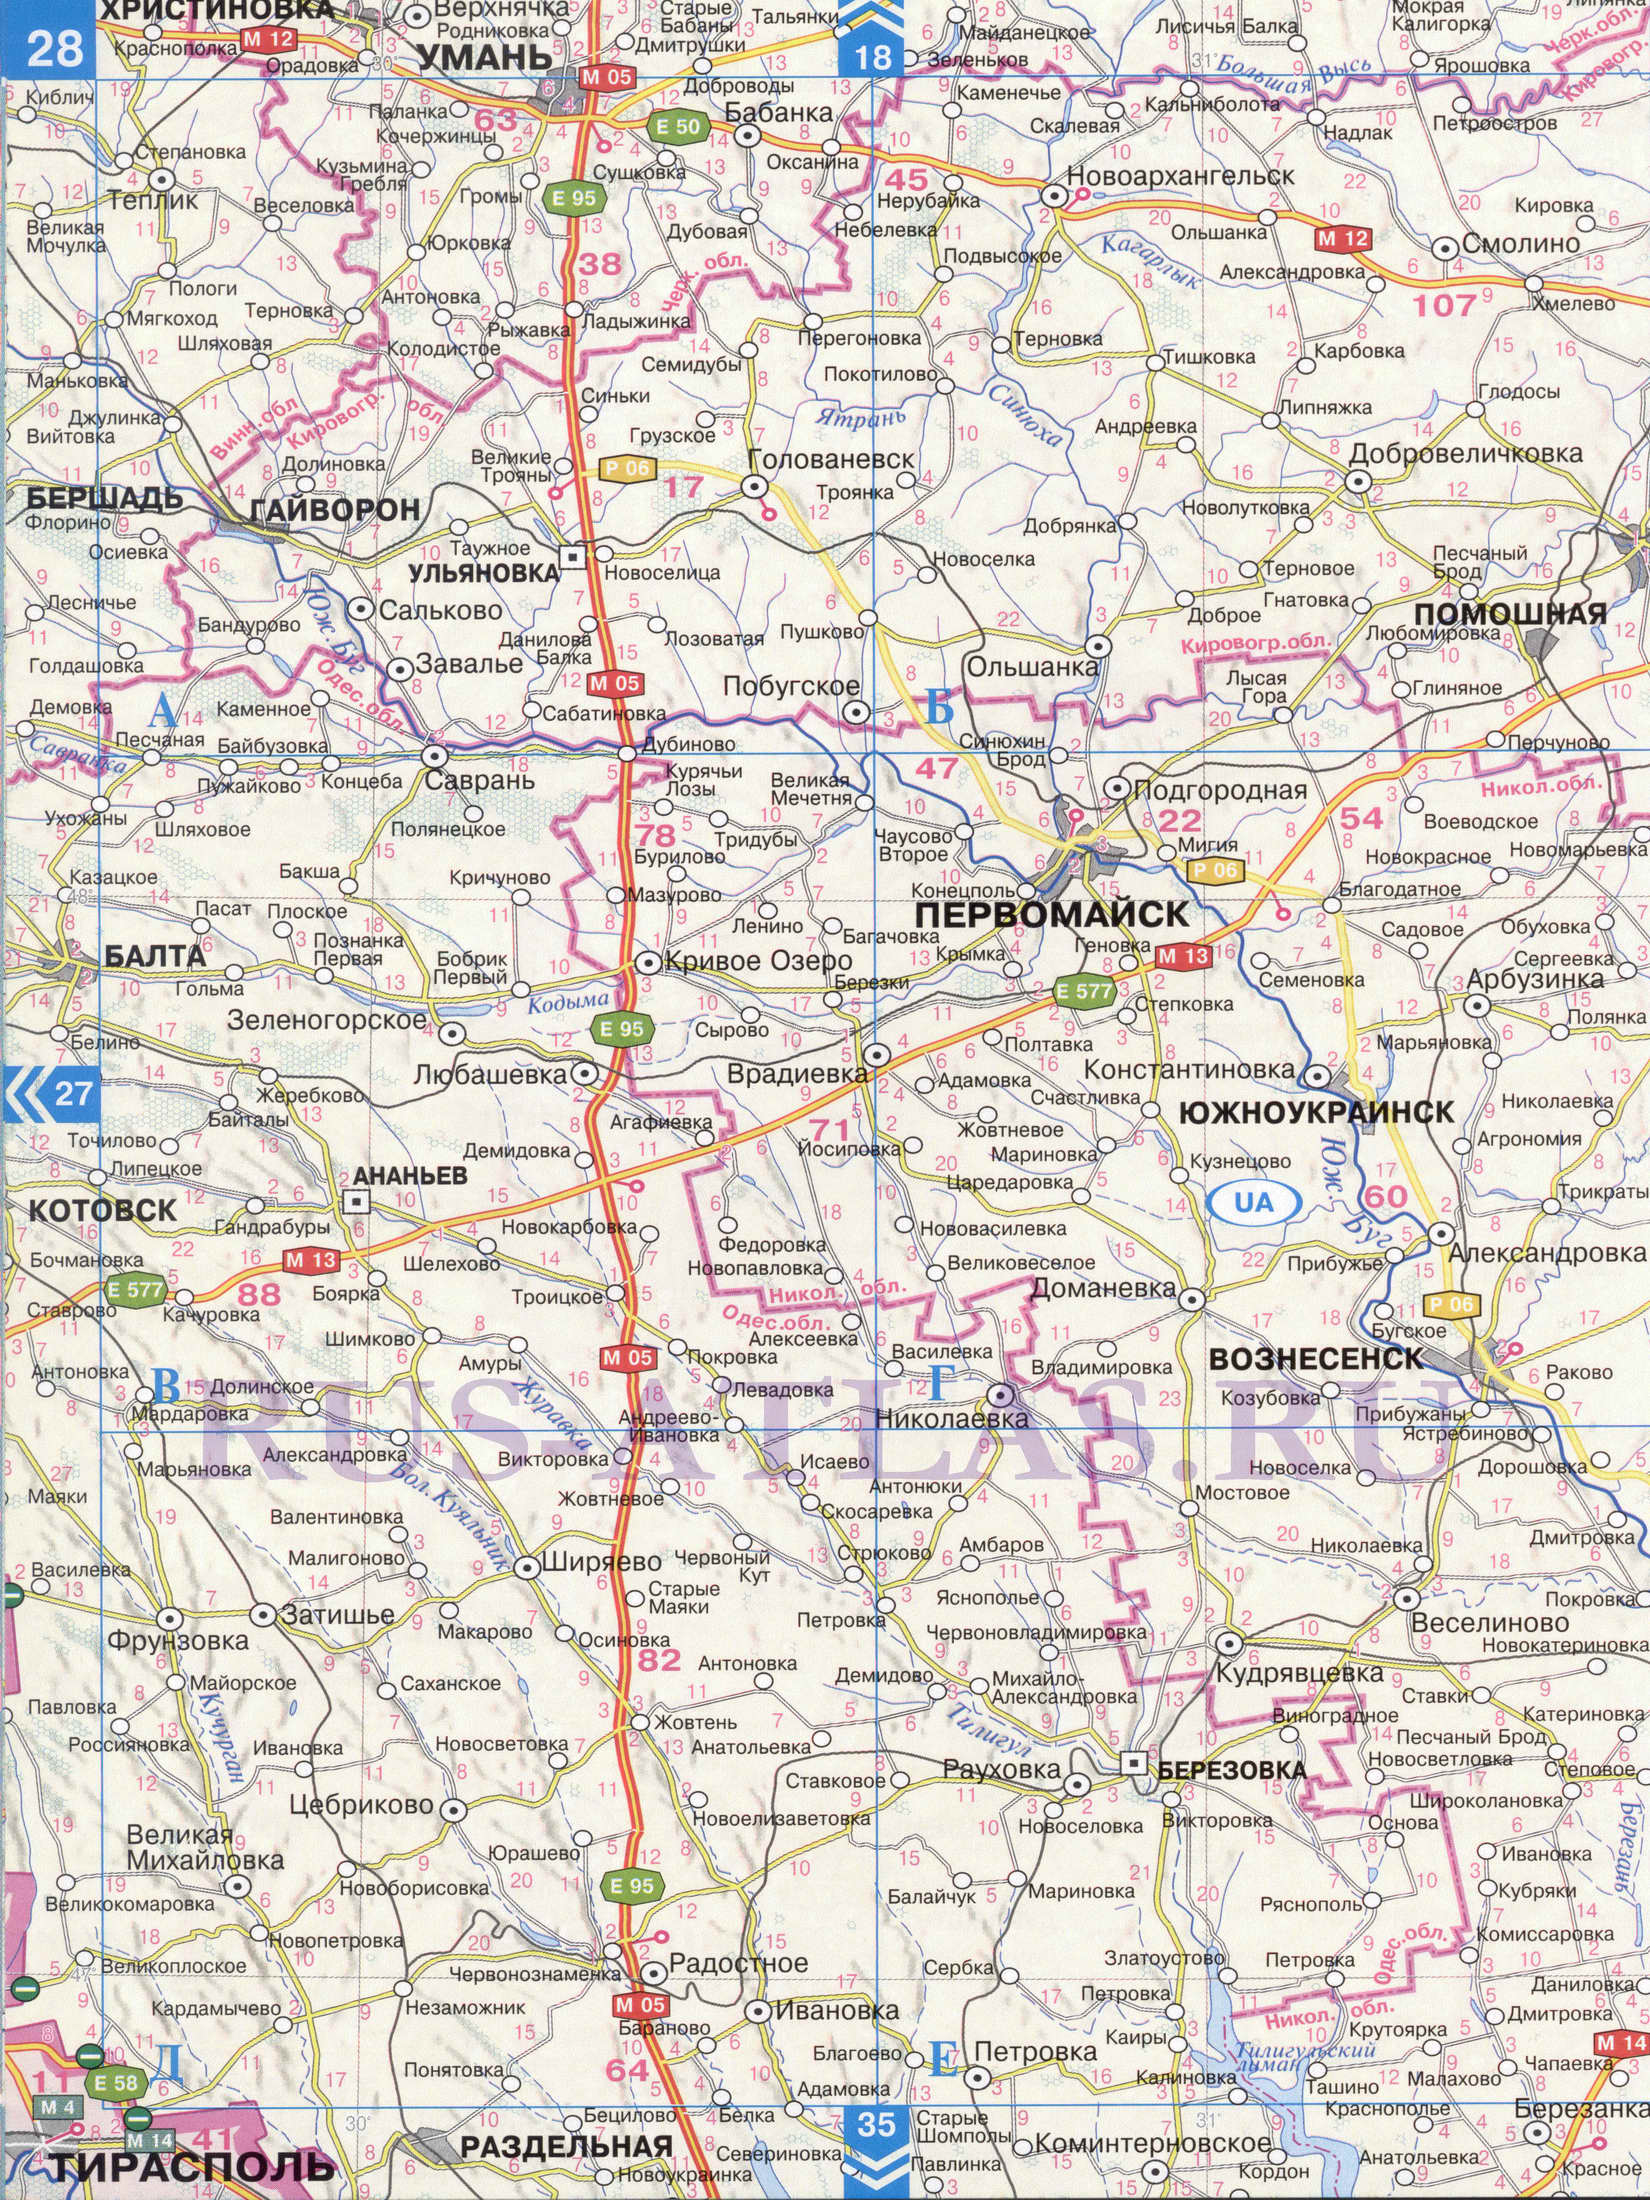 Автомобильная карта Одесской области. Атлас дорог СНГ - карта Одесской области и Молдавии, B0 - 